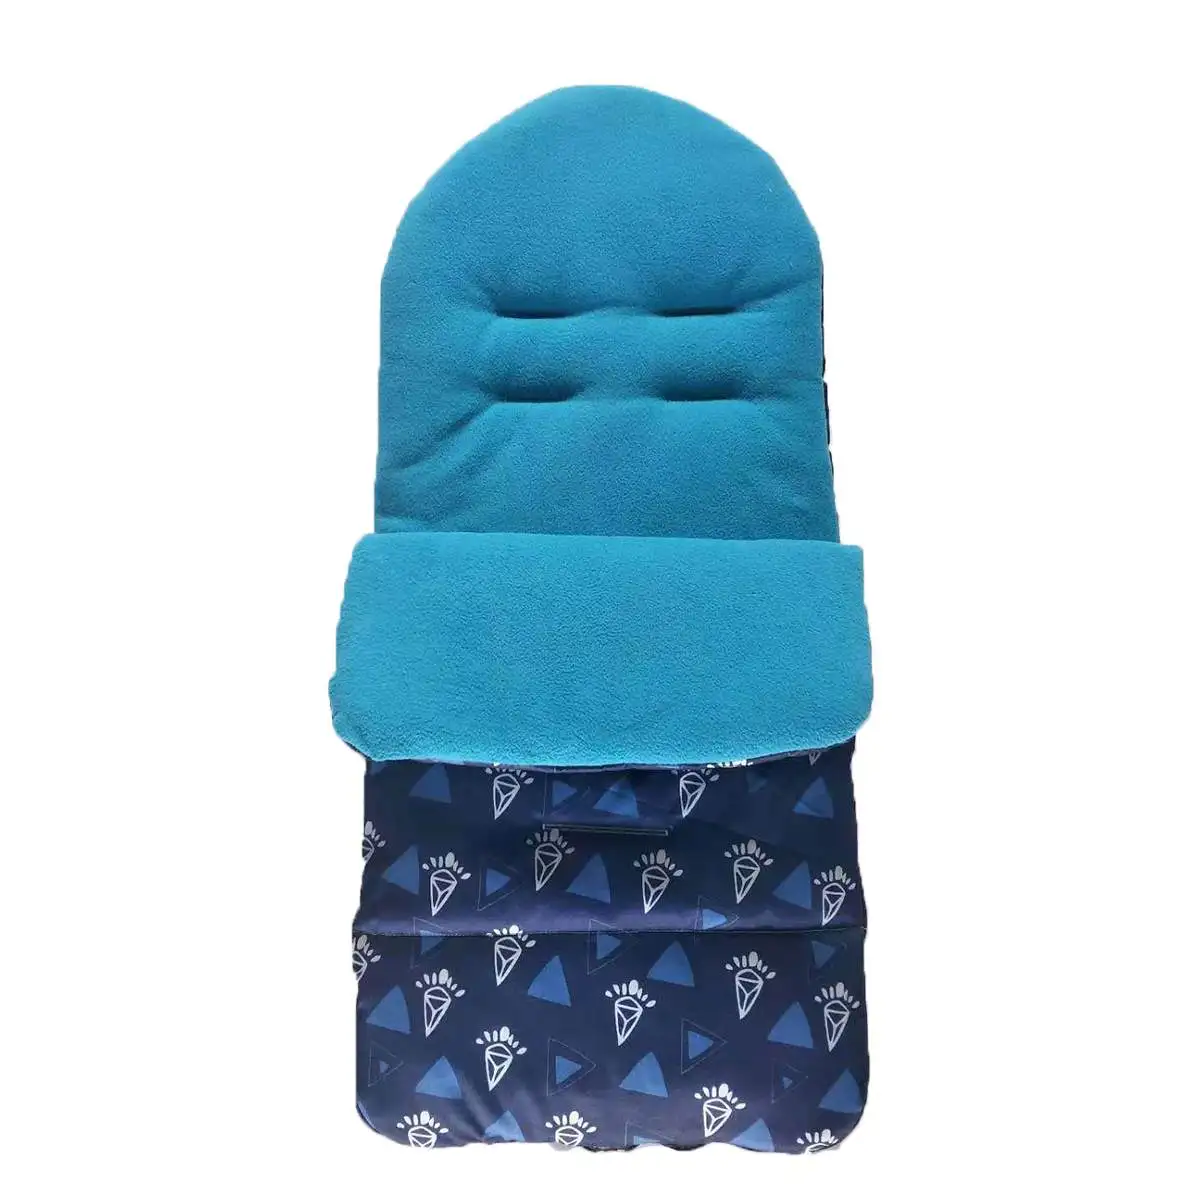 Ветрозащитная теплая детская коляска для сна во время прогулок муфта для ног Buggys коляска на колесиках коврик для ног муфта для ног для зимы - Цвет: Blue